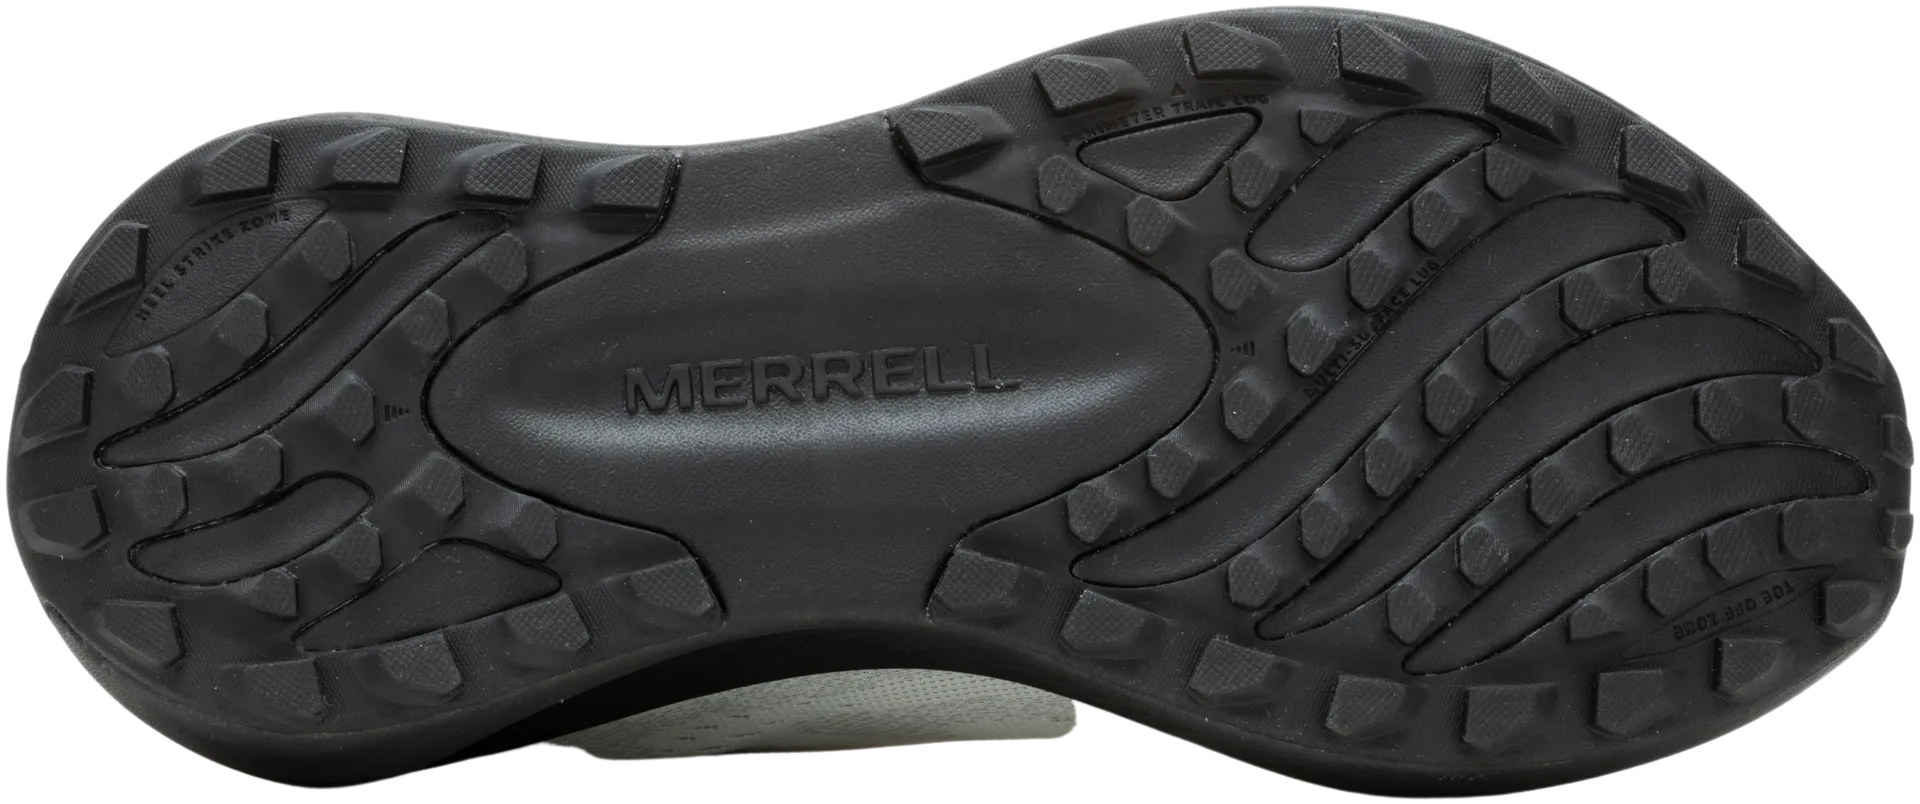 Merrell naisten juoksujalkine Morphlite black/white - White/Multi - 5